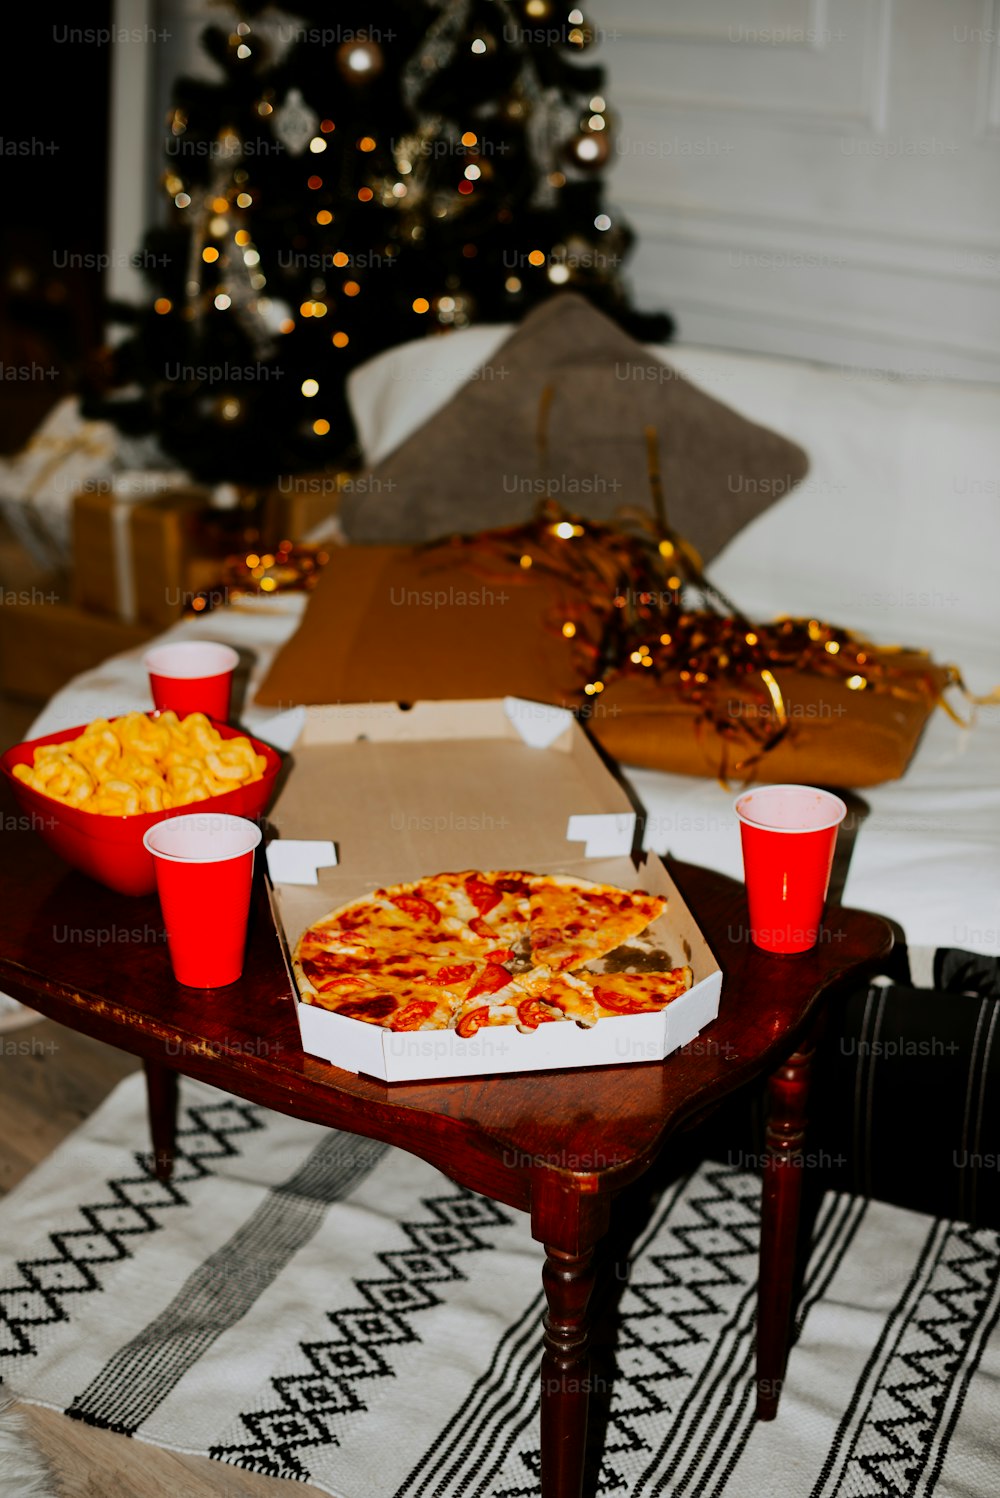 Una mesa cubierta con cajas de pizza y tazas rojas